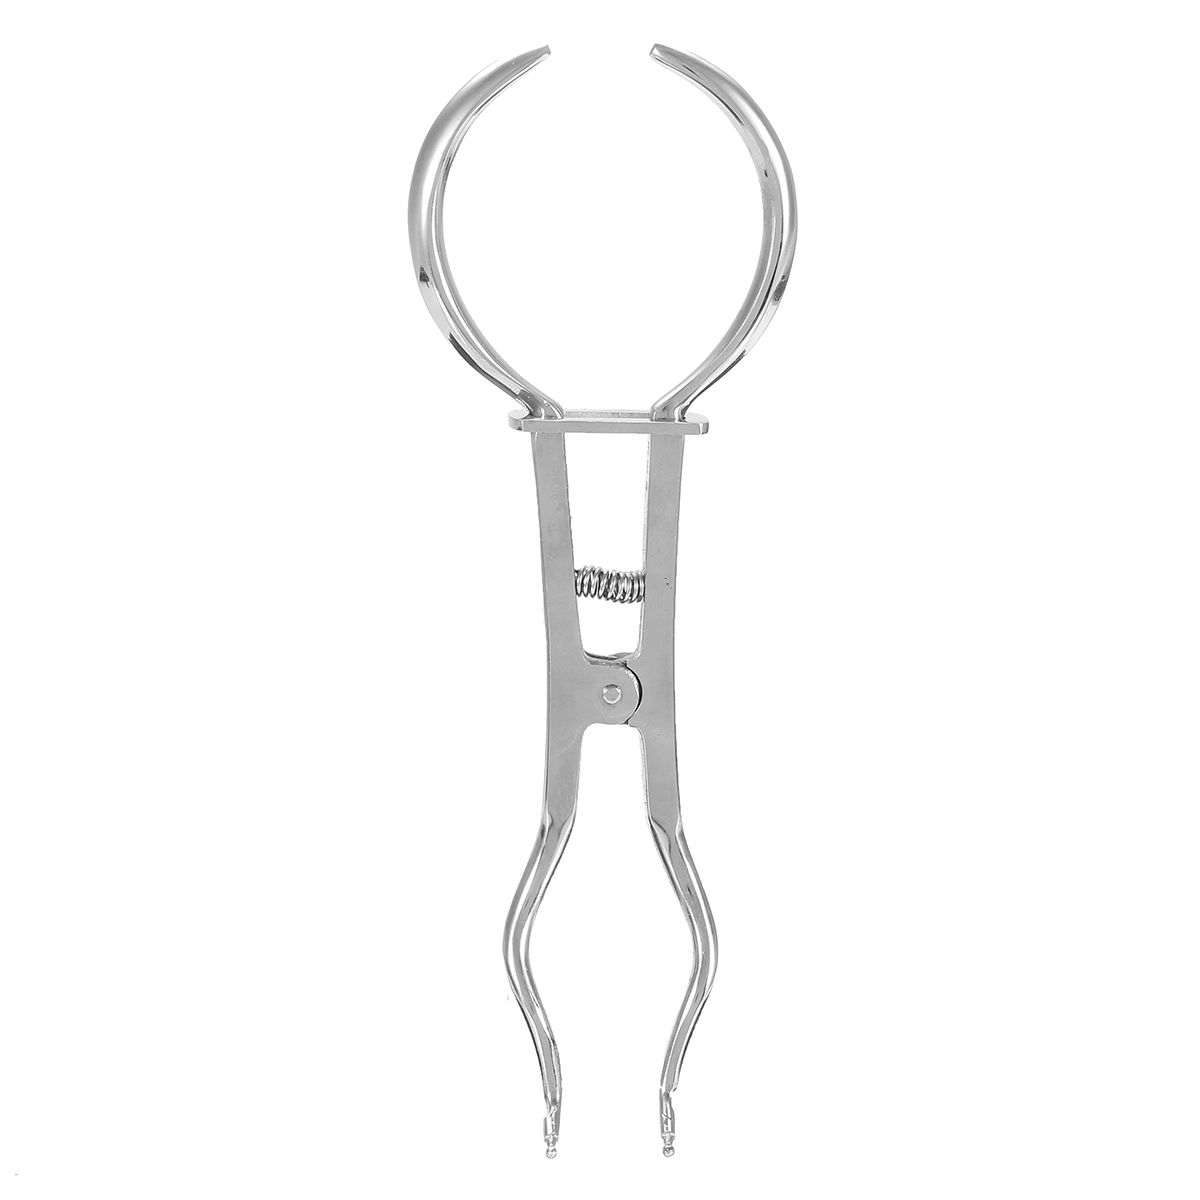 Dental-Dentist-Basic-Rubber-Dam-Kit-Dental-Tools-Surgical-Instruments-Set-1382163